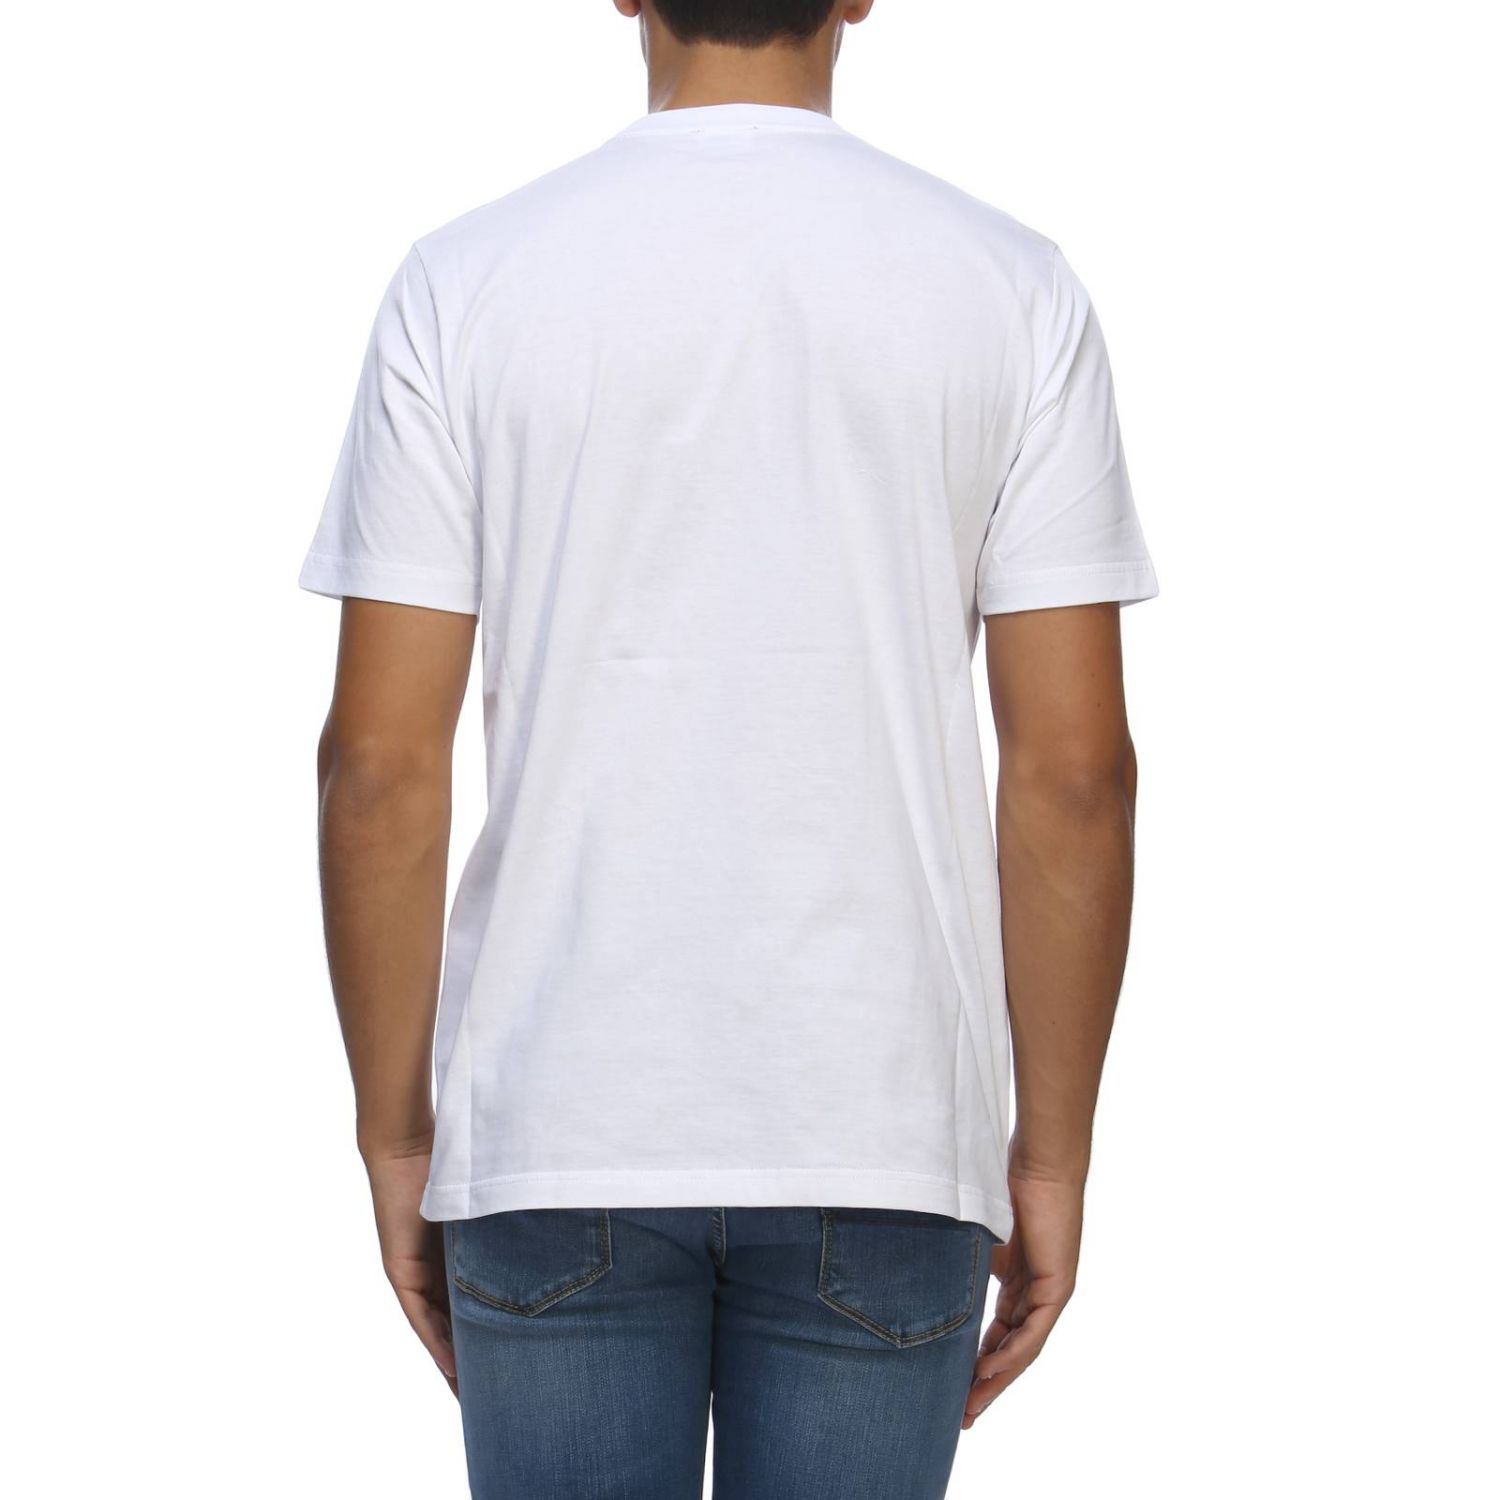 T-shirt men Diesel | T-Shirt Diesel Men White | T-Shirt Diesel 00SWCM ...